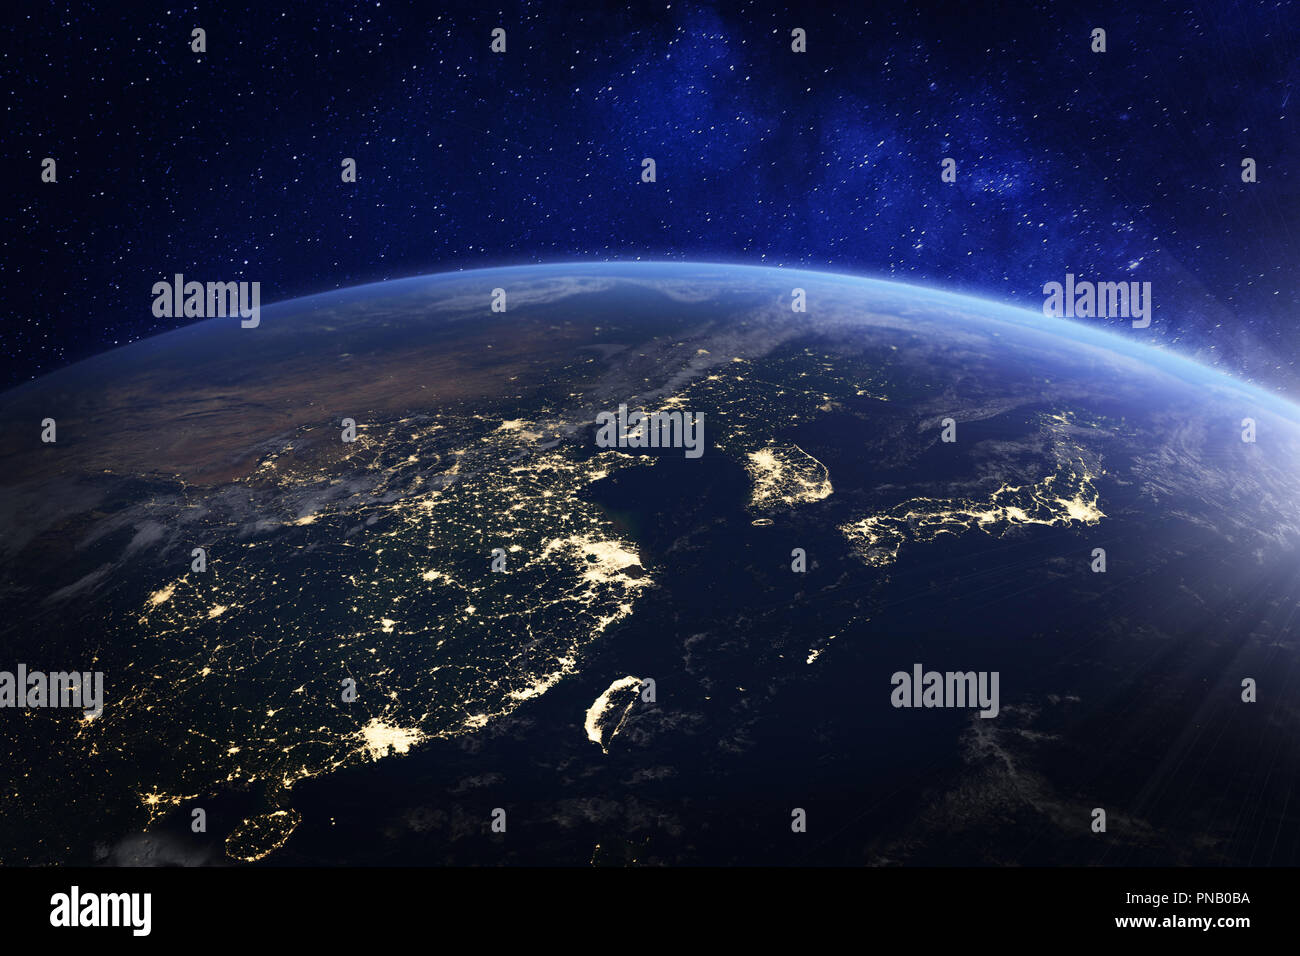 Asie pendant la nuit à partir de l'espace avec les lumières de la ville, montrant l'activité humaine en Chine, Japon, Corée du Sud, Hong Kong, Taiwan et d'autres pays, de rendu 3D Banque D'Images